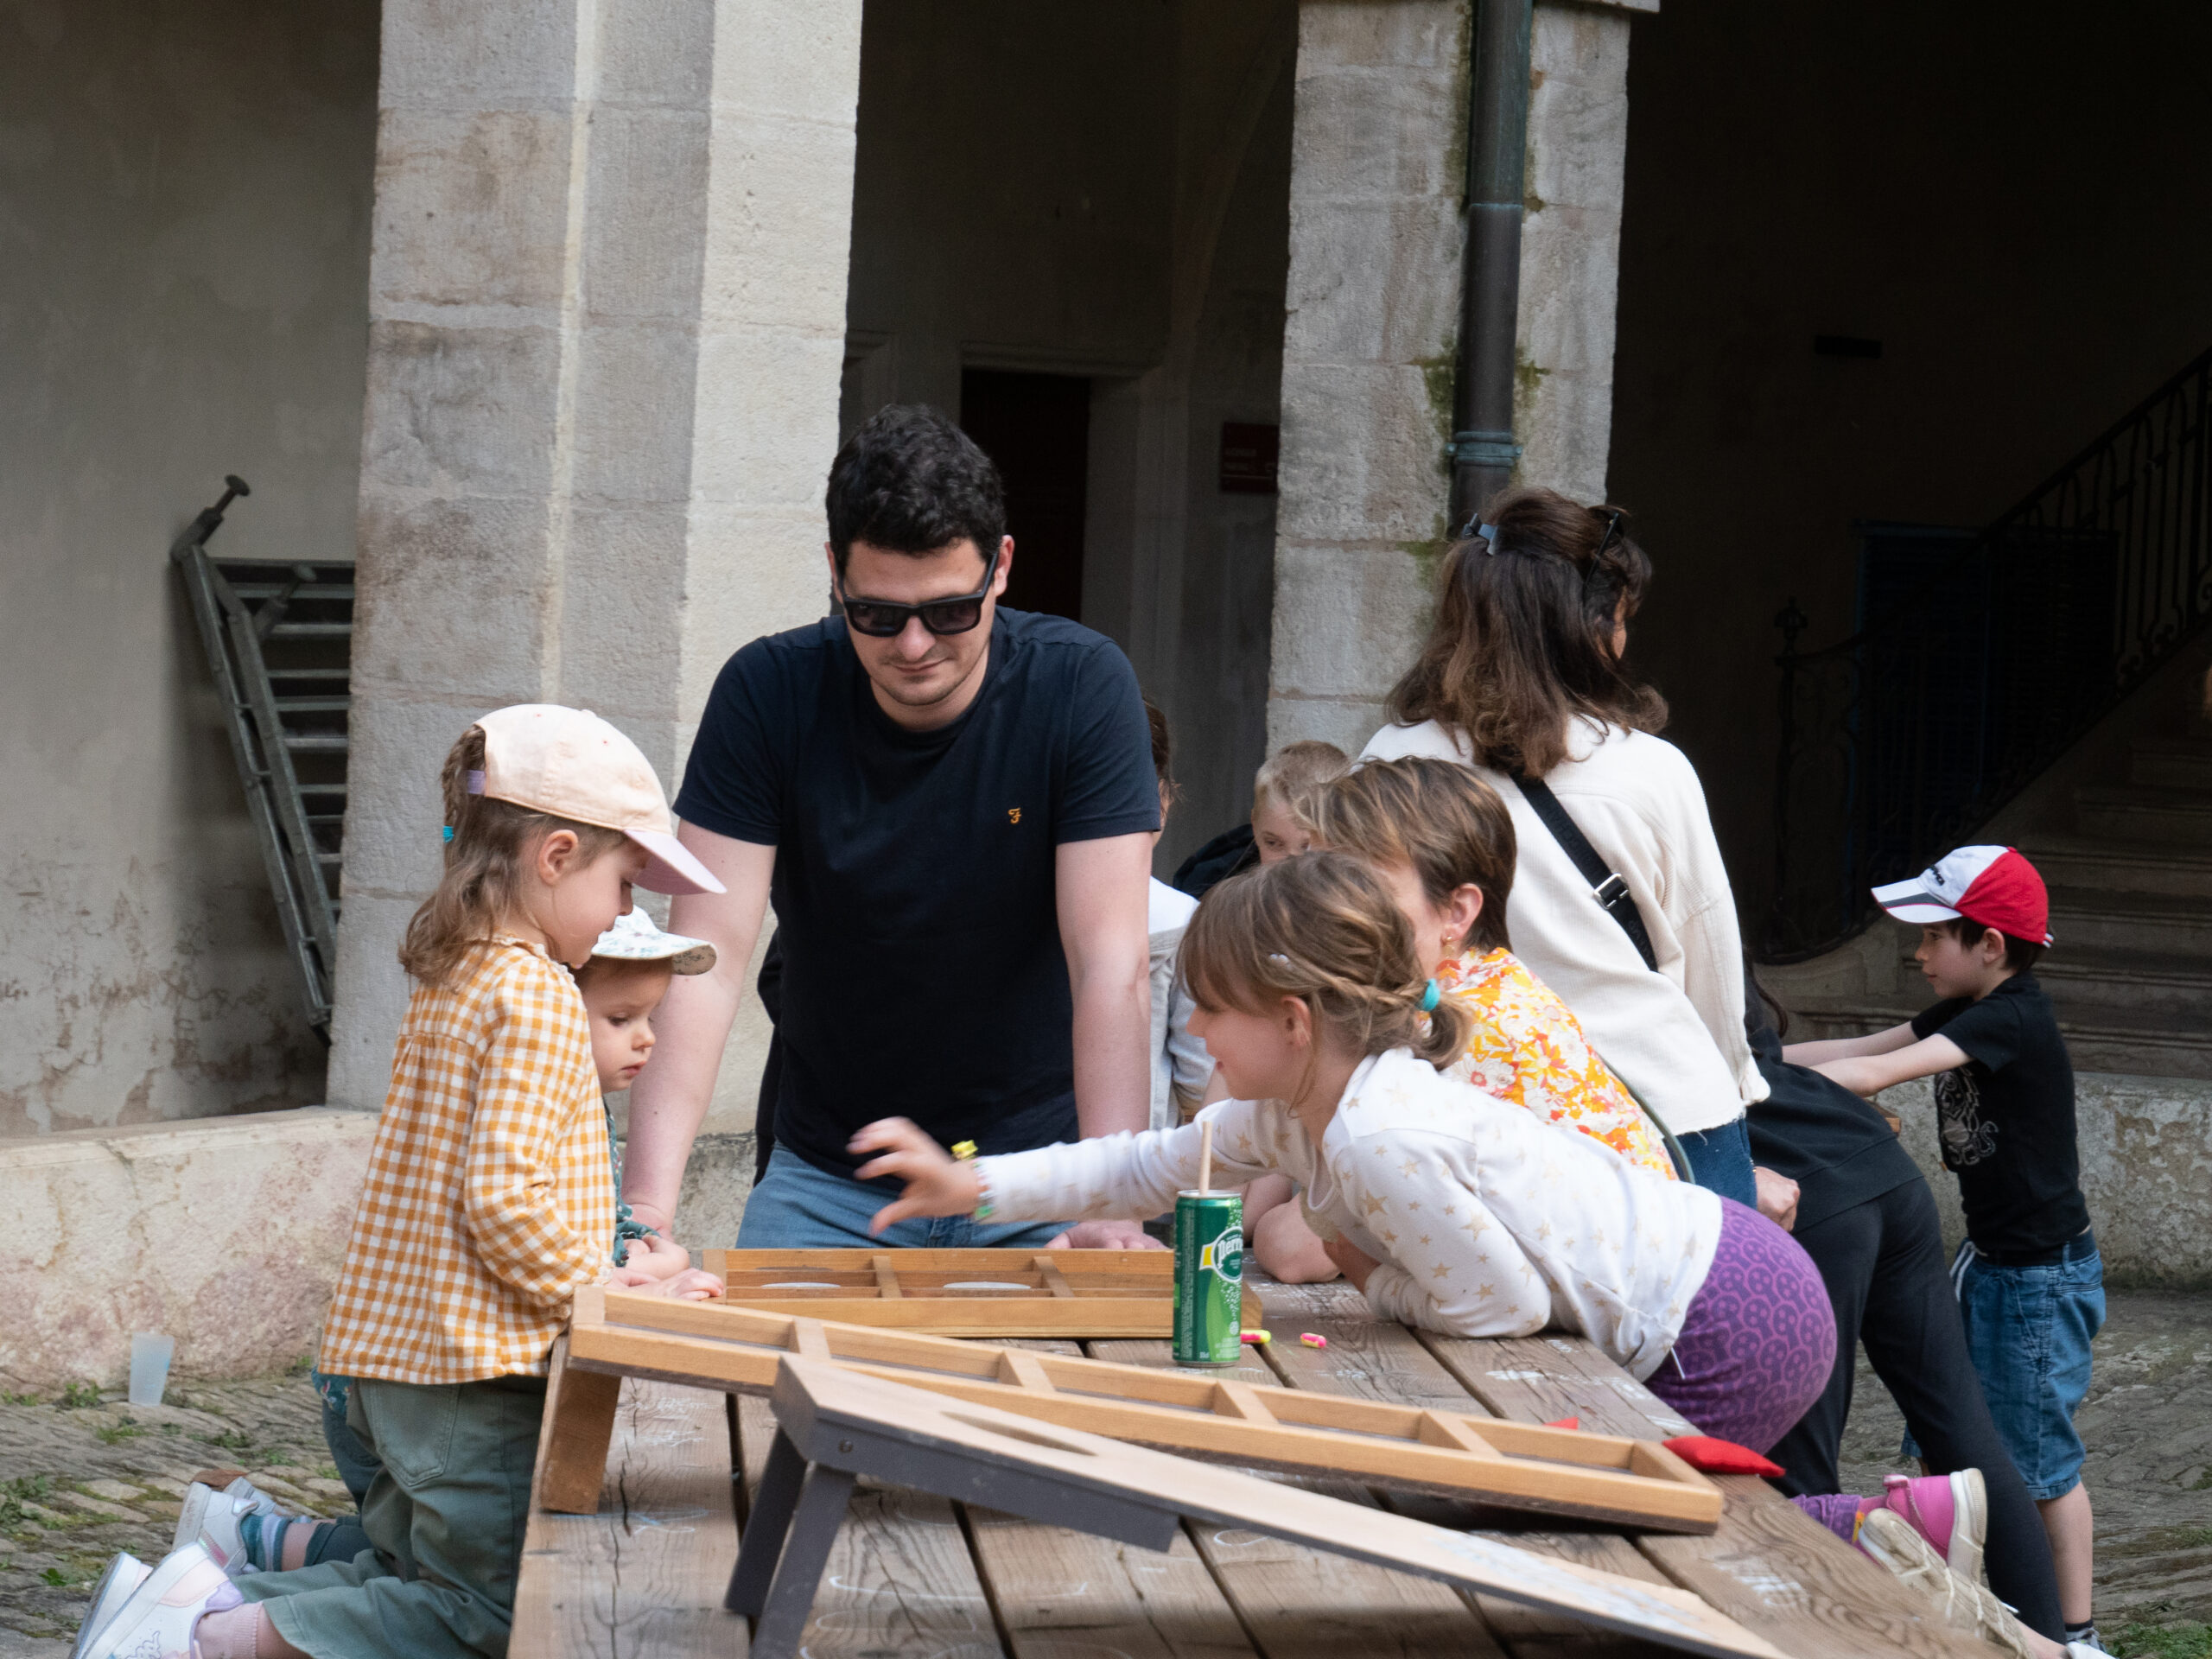 Quatre enfants jouent à un jeu en bois sur une table de pique-nique, surveillés par un homme adulte